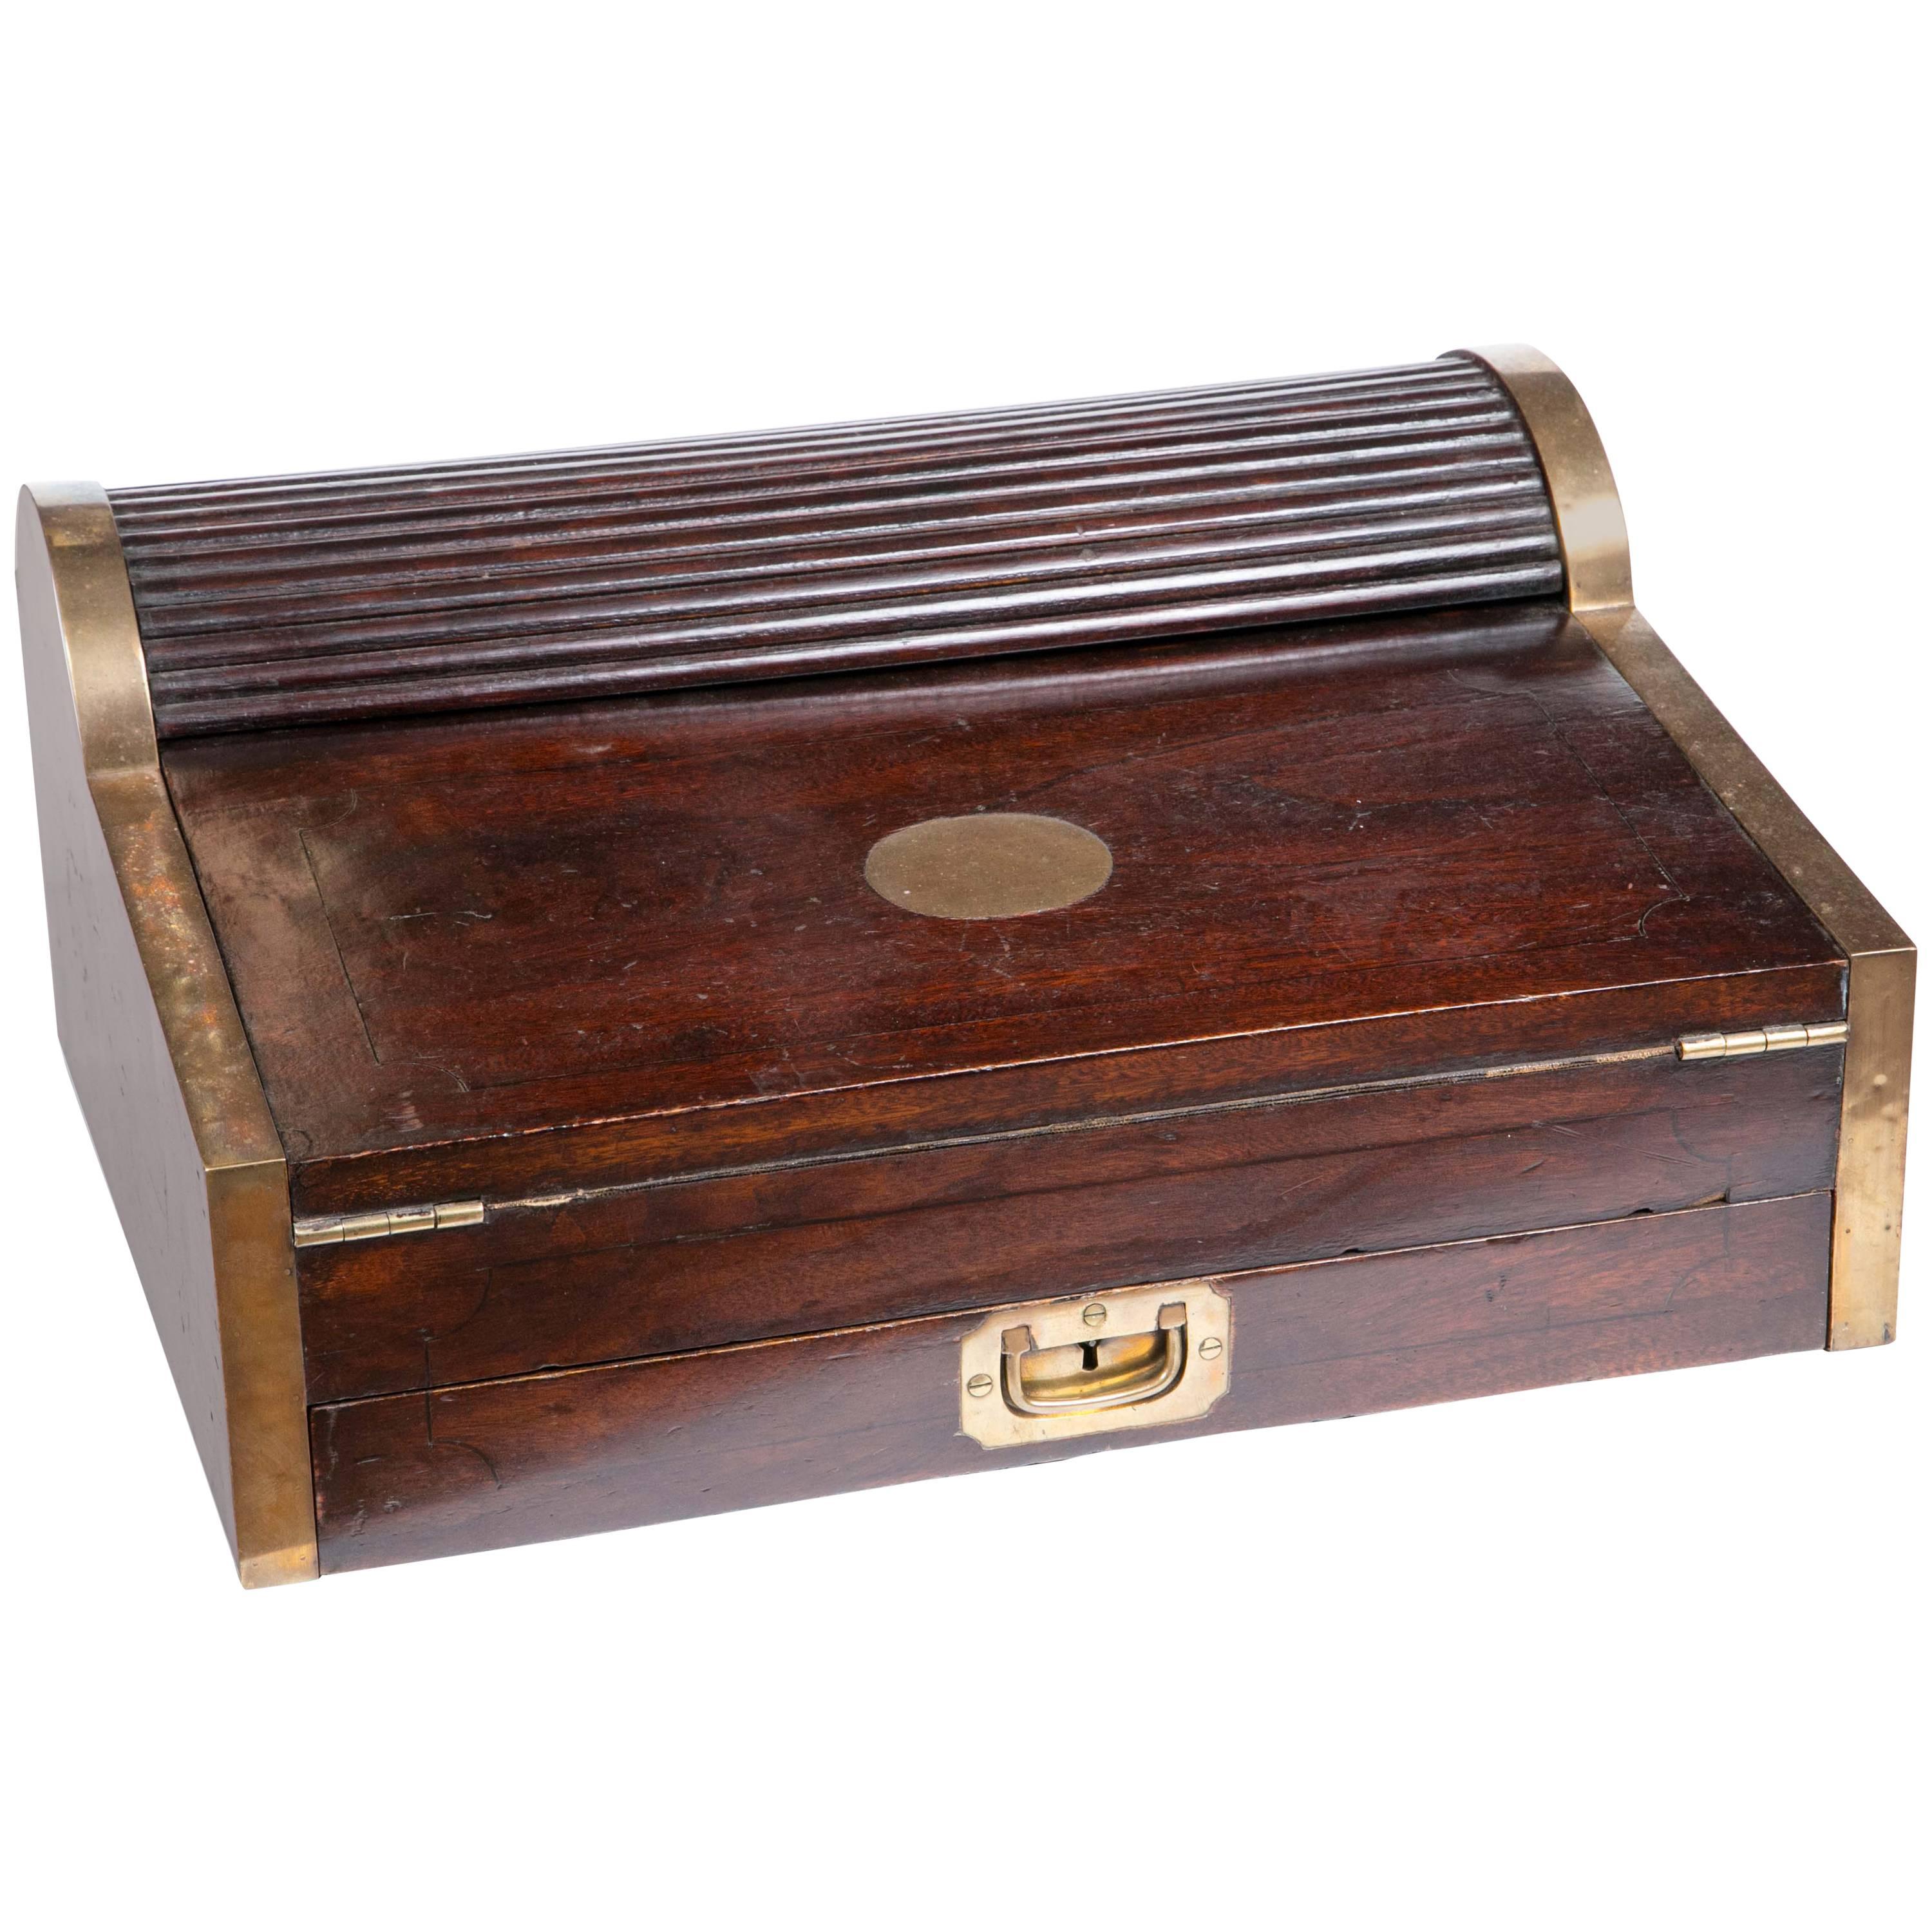 Antique 1830 Wooden Tambour Campaign Lap Roll Top Desk